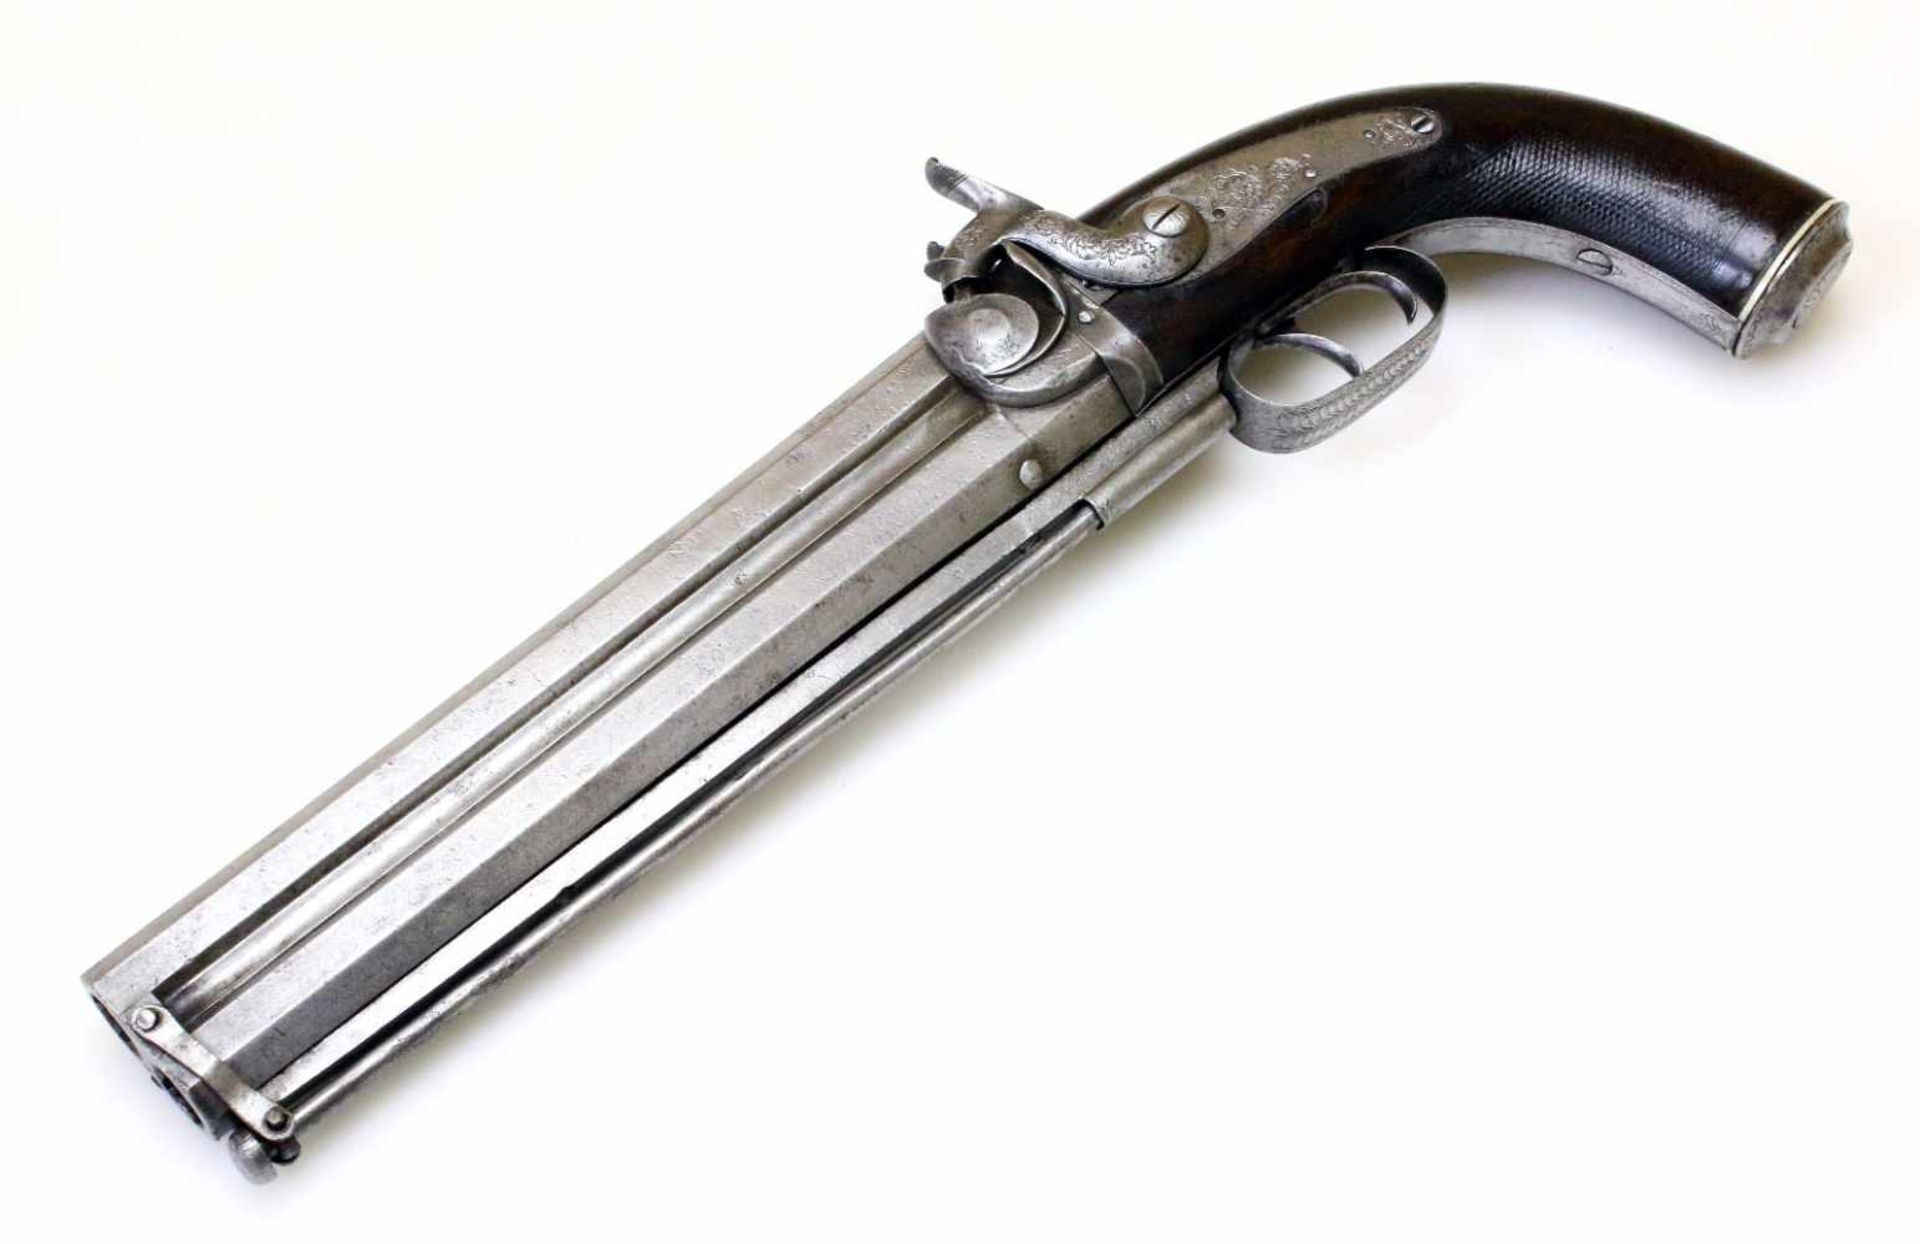 Doppelläufige Perkussionspistole - England um 1850 Cal. 14mm Perk., Zustand 2. Zwei übereinander - Bild 5 aus 15